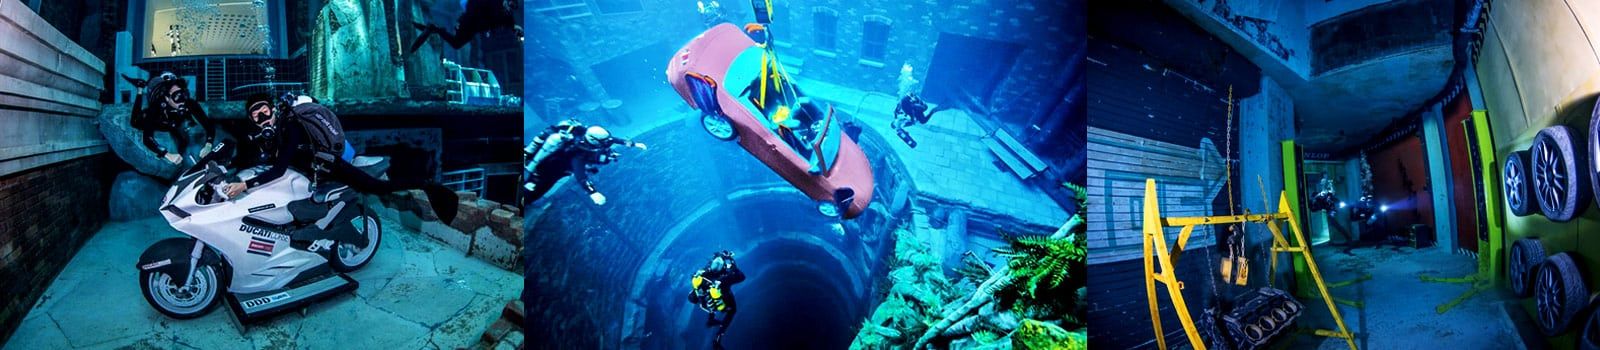 La piscina más profunda del mundo - Deep Dive Dubai